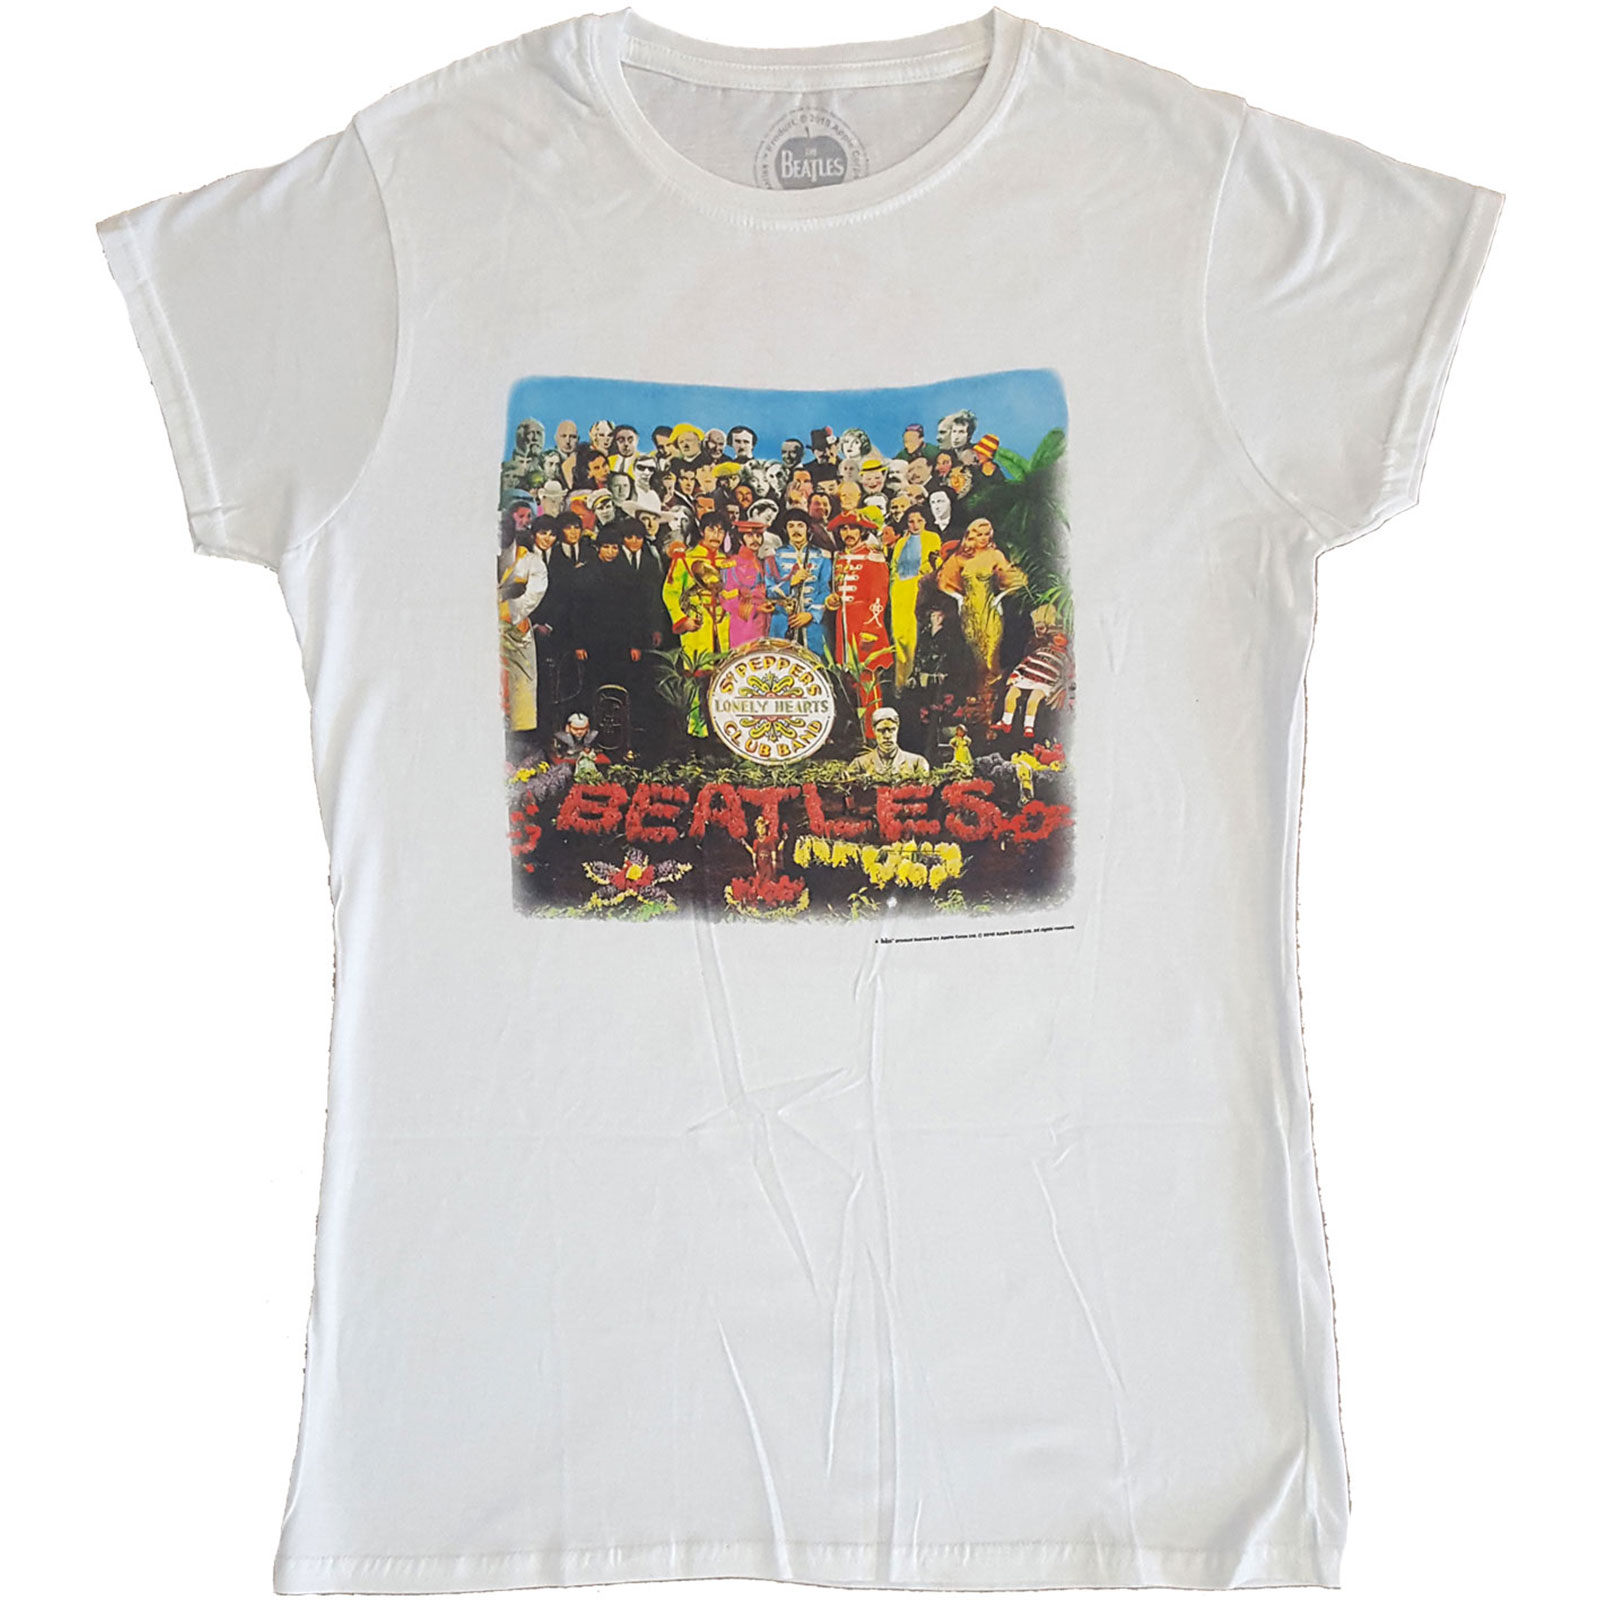 (ビートルズ) The Beatles オフィシャル商品 レディース Sgt Pepper Tシャツ バックプリント 半袖 トップス 【海外通販】